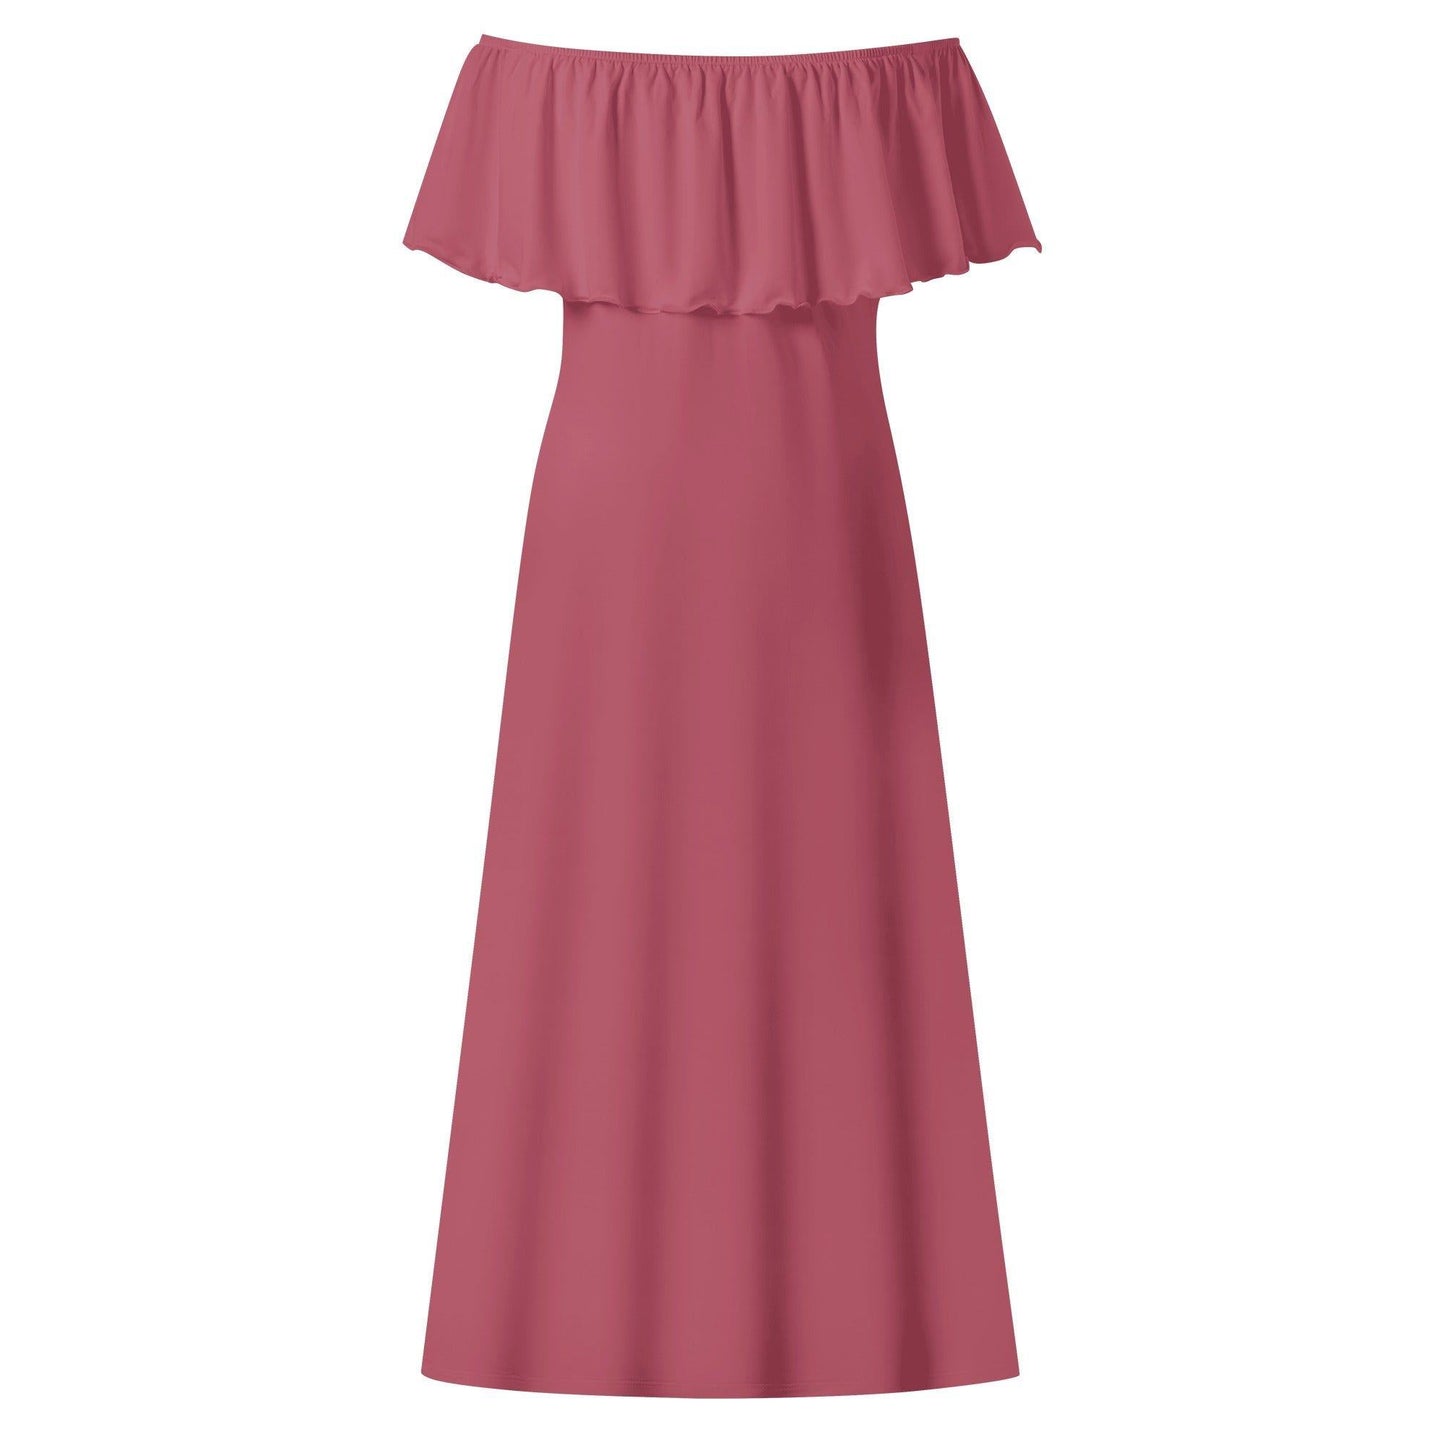 Langes schulterfreies Hippie Pink Kleid mit lockerem Oberteil Off-Shoulder-Kleid 73.99 Hippie, Kleid, Lang, locker, Oberteil, Pink, Schulterfrei JLR Design